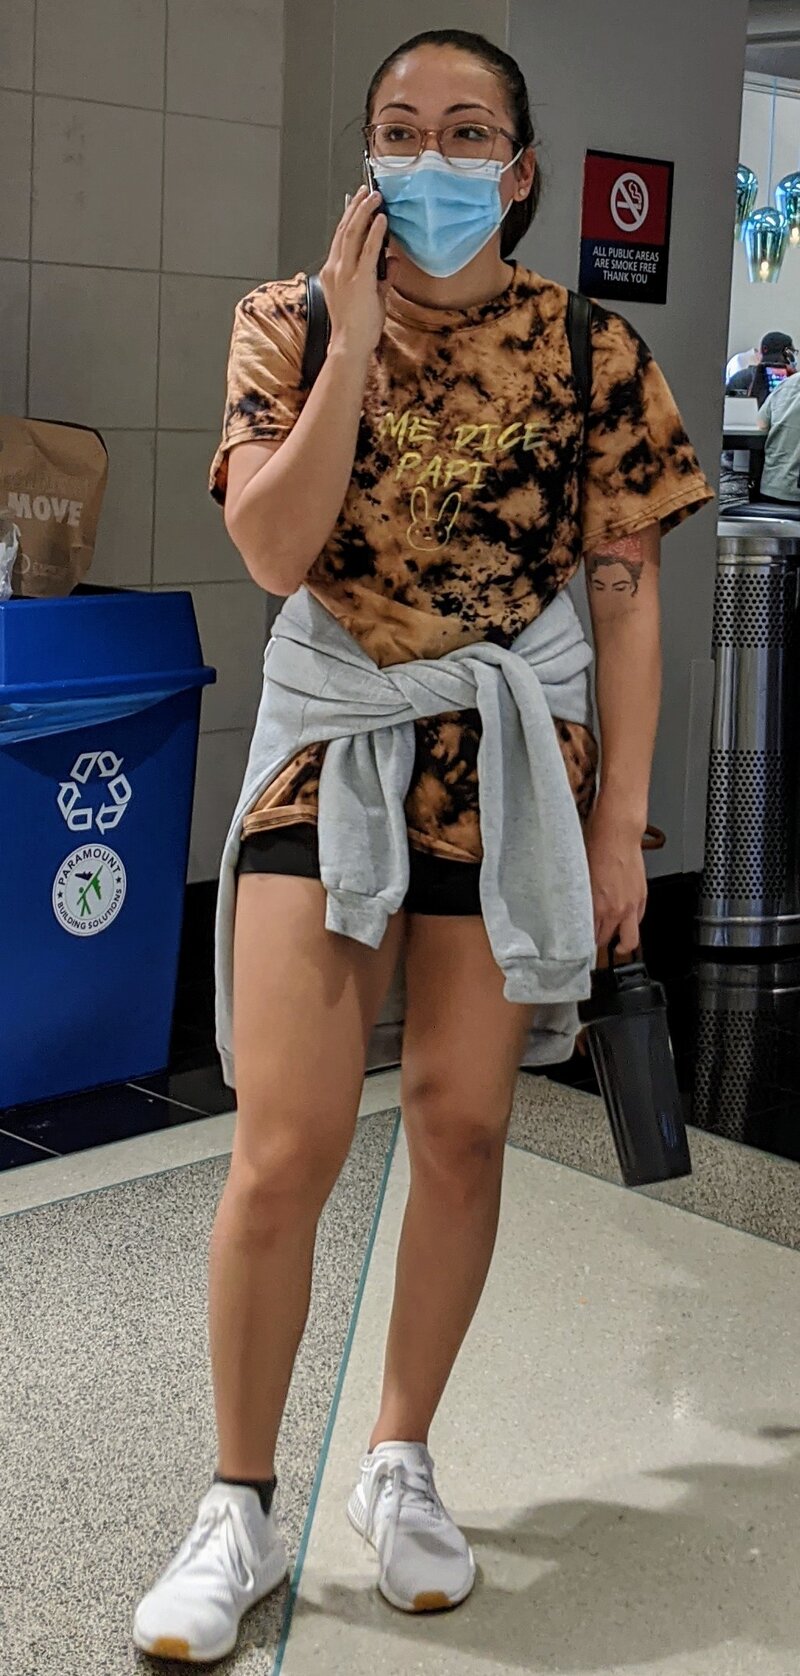 空港でヤクをしている間、女性はクリーパーに注意を払わない picture